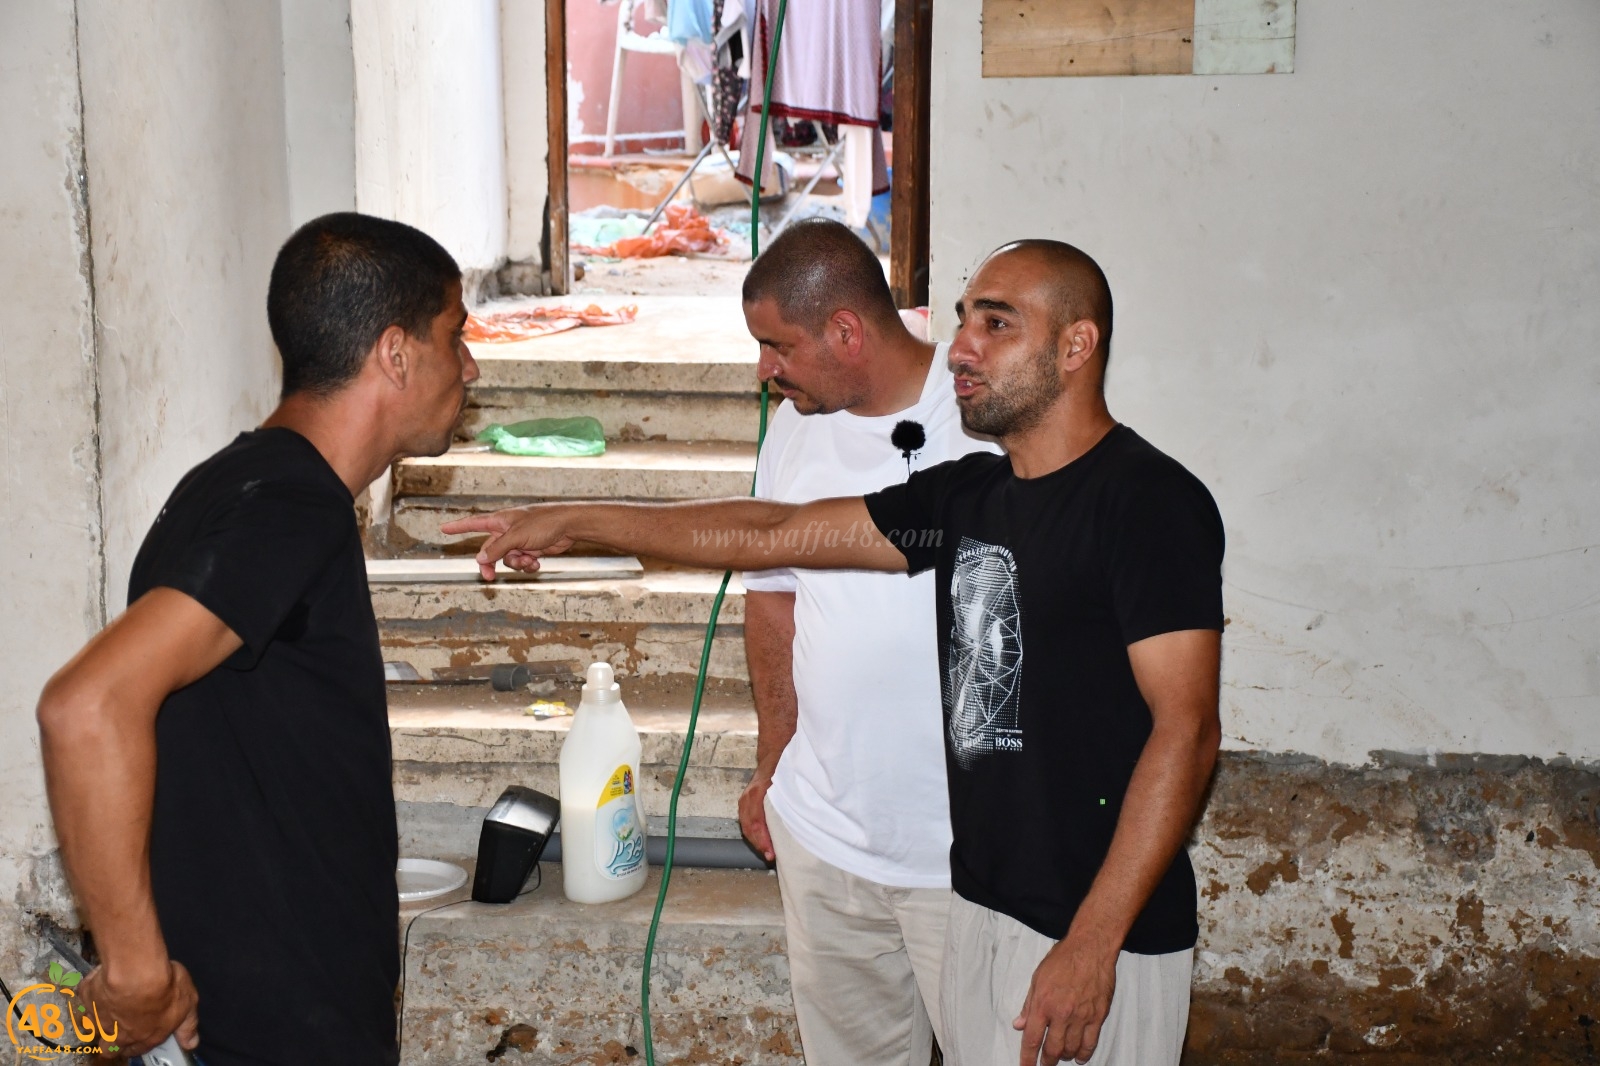 فيديو: جمعية يافا تُطلق نداء استغاثة لصيانة بيت عائلة فقيرة في حي العرقتنجي بيافا 